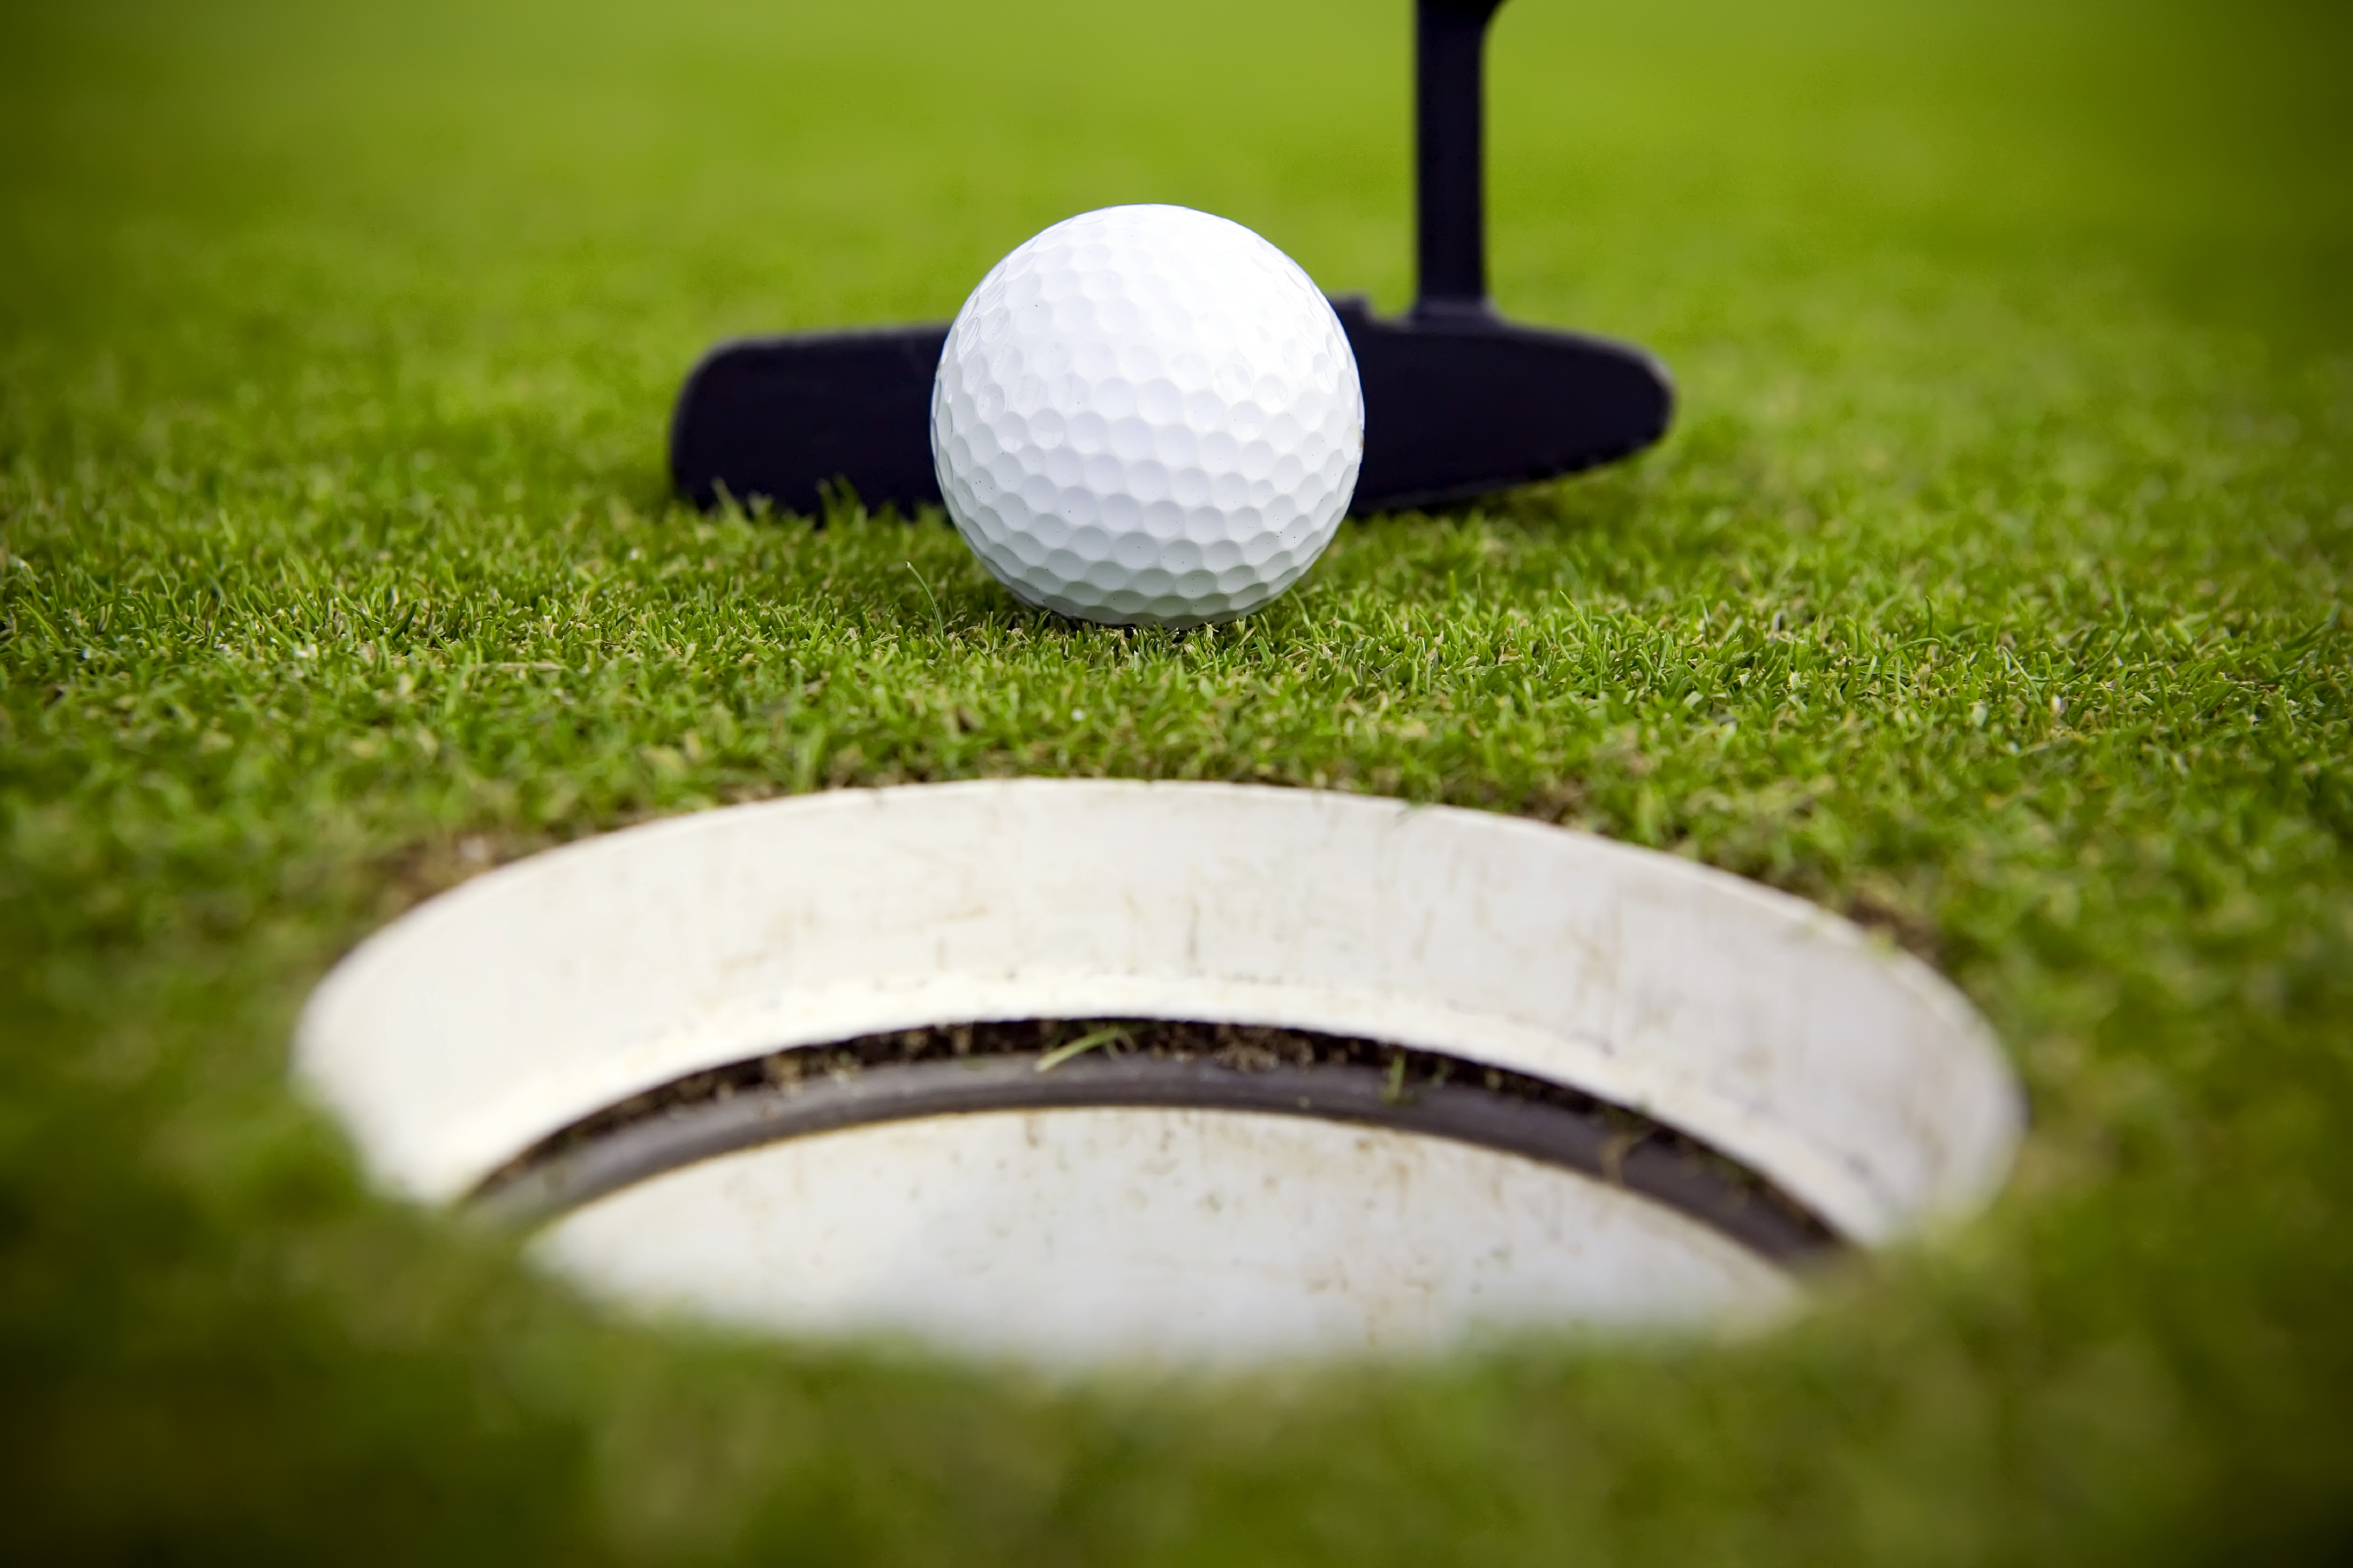 15 bài luyện tập hiệu quả để phát triển kỹ năng golf (Phần 3)